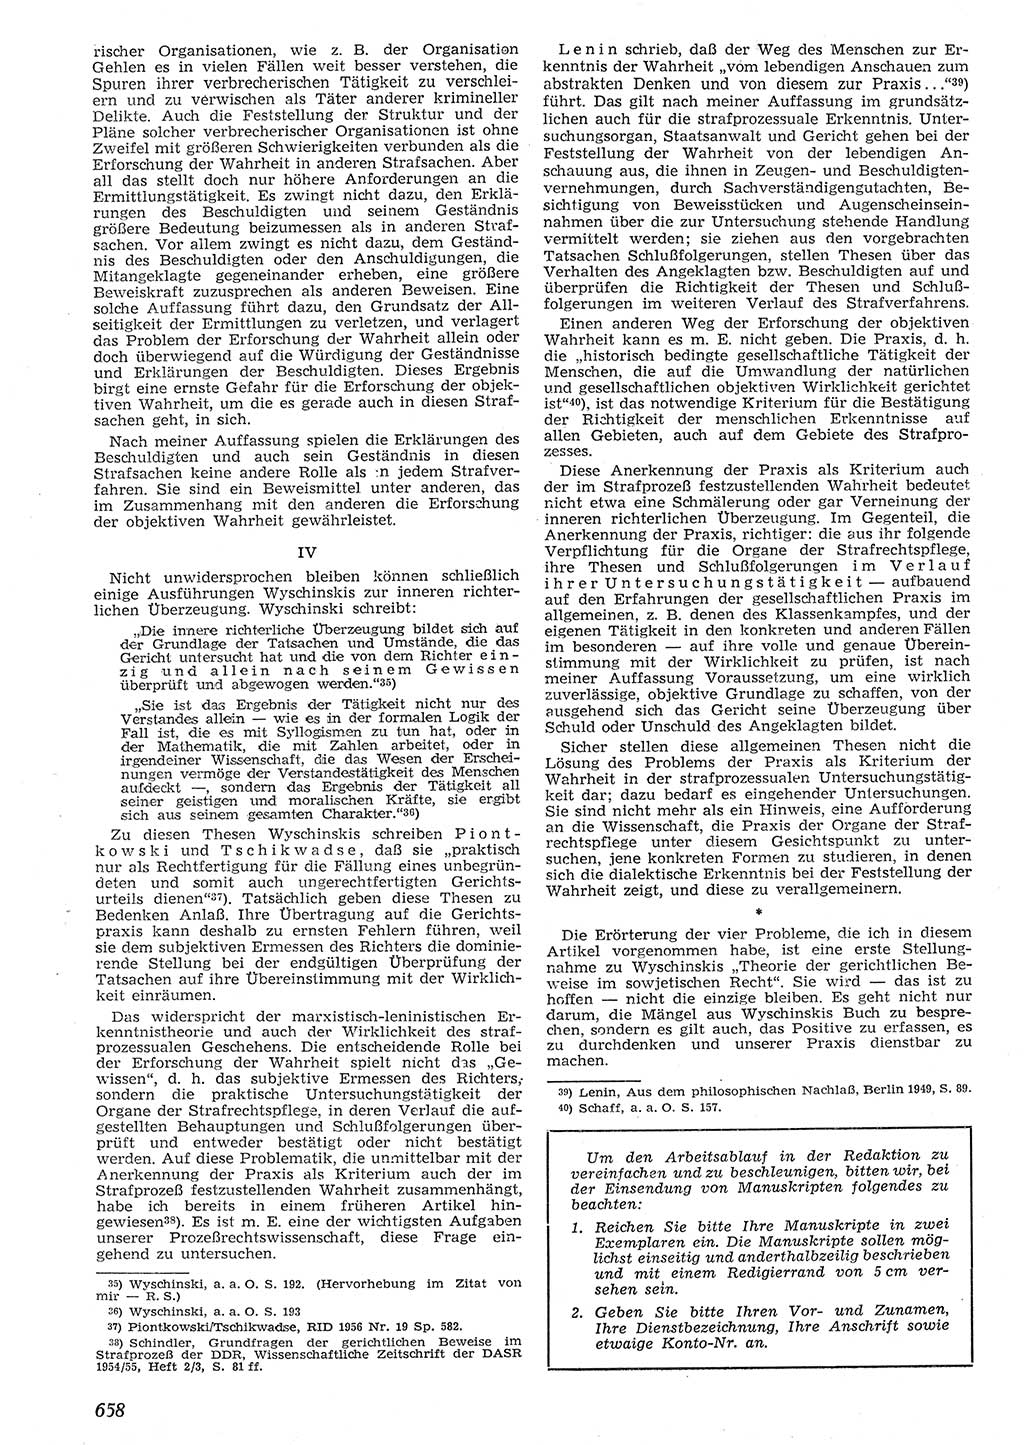 Neue Justiz (NJ), Zeitschrift für Recht und Rechtswissenschaft [Deutsche Demokratische Republik (DDR)], 10. Jahrgang 1956, Seite 658 (NJ DDR 1956, S. 658)